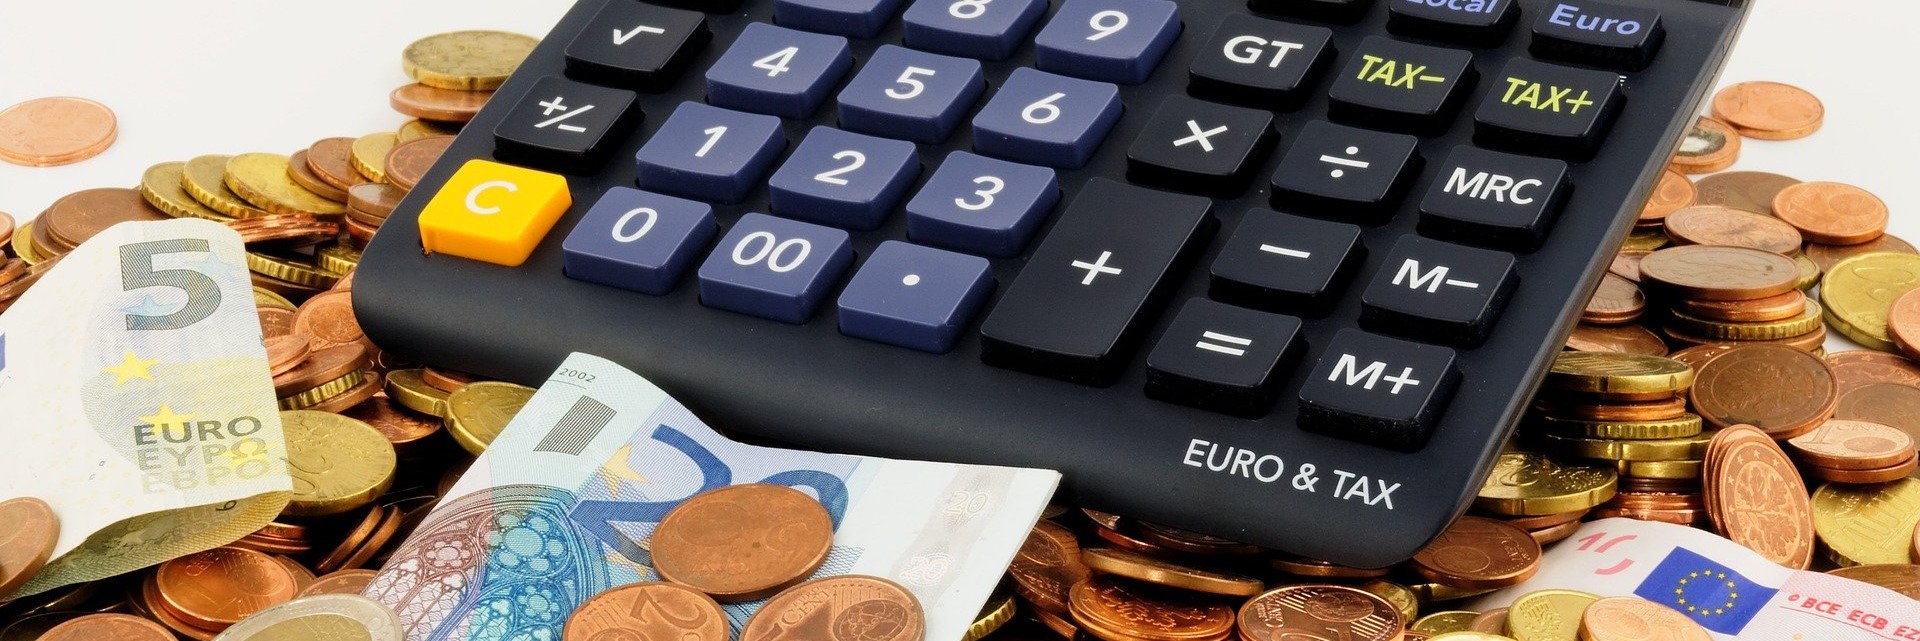 Foto Taschenrechner mit Euro Geldscheinen und Münzen